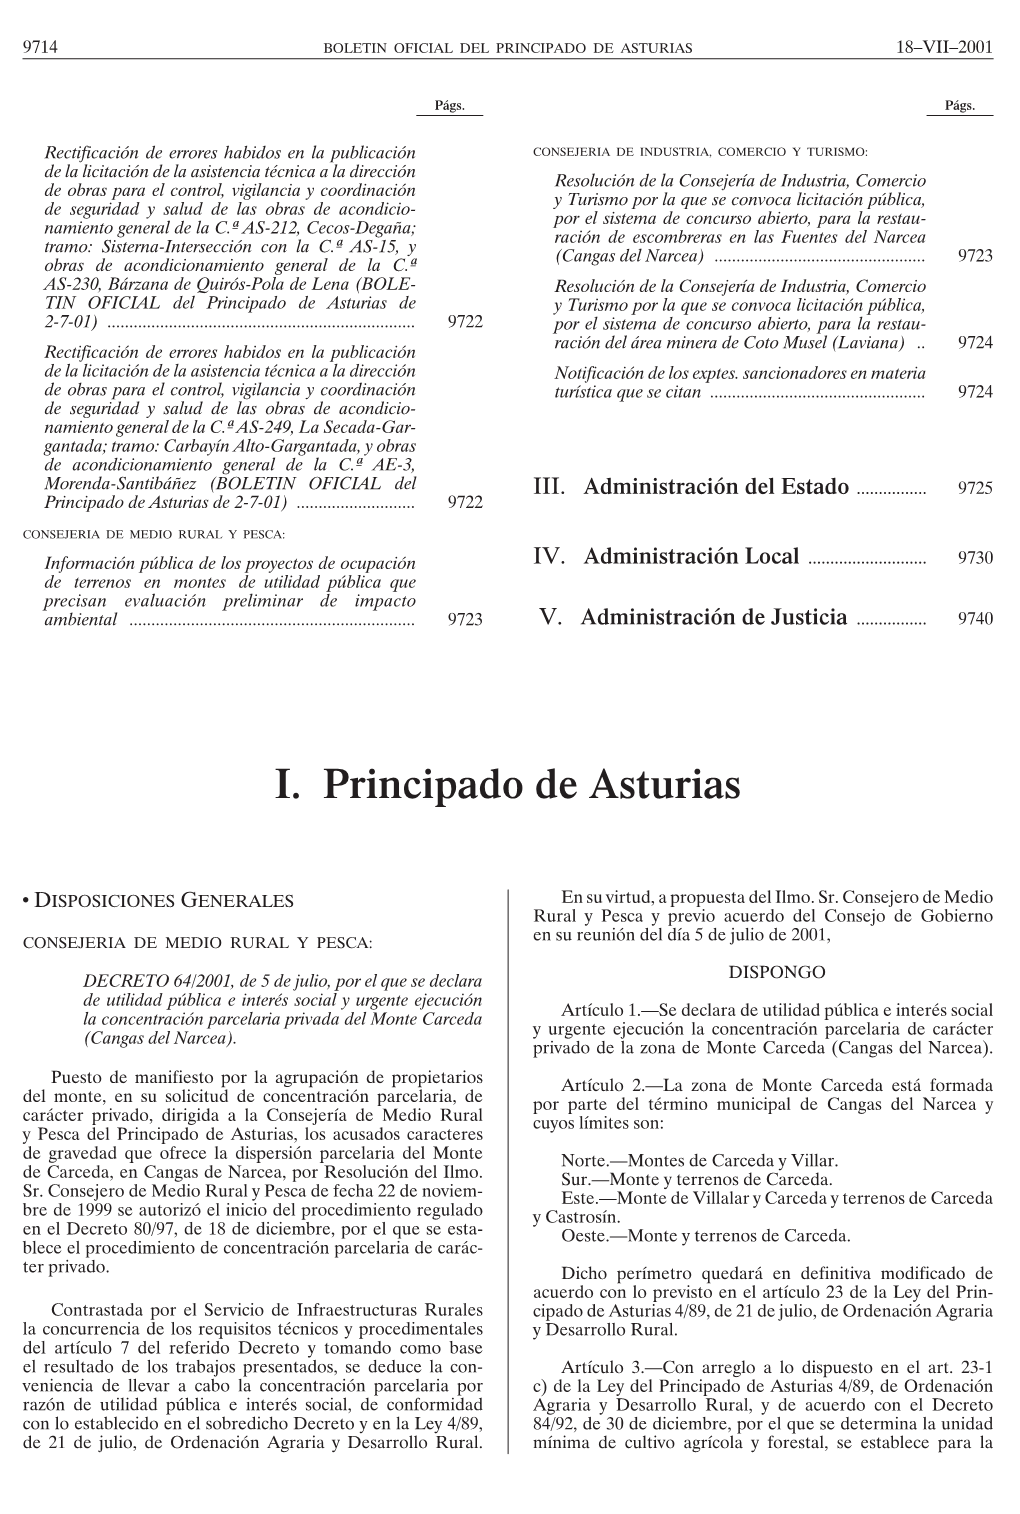 I. Principado De Asturias